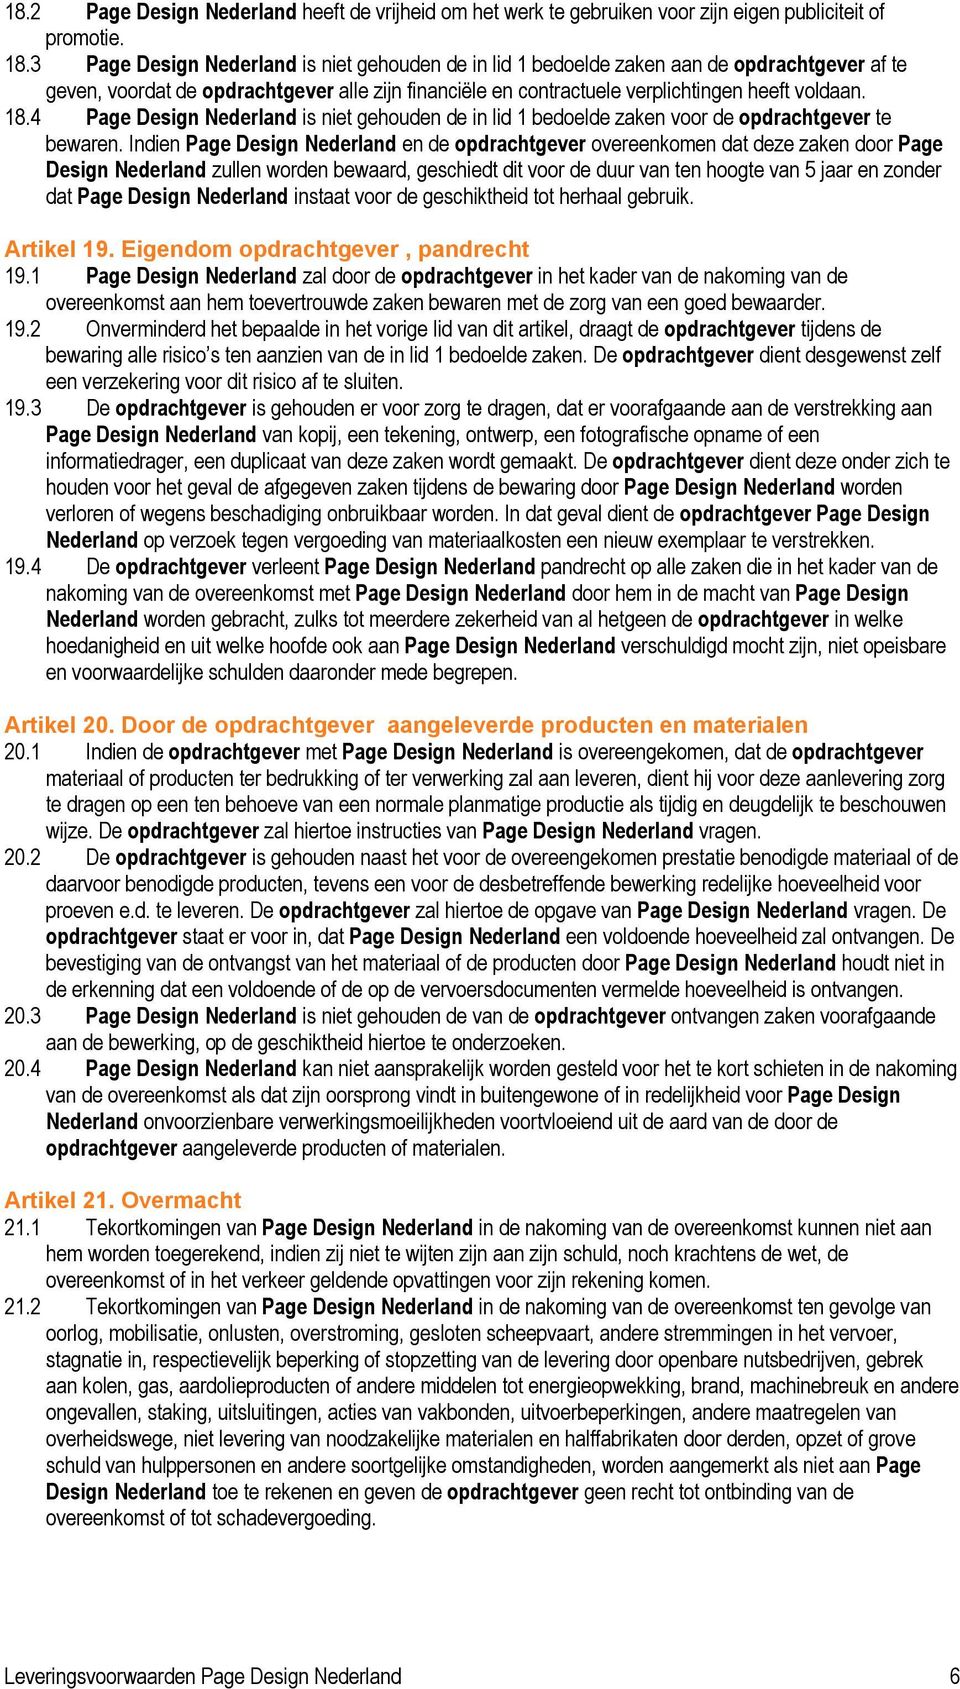 4 Page Design Nederland is niet gehouden de in lid 1 bedoelde zaken voor de opdrachtgever te bewaren.